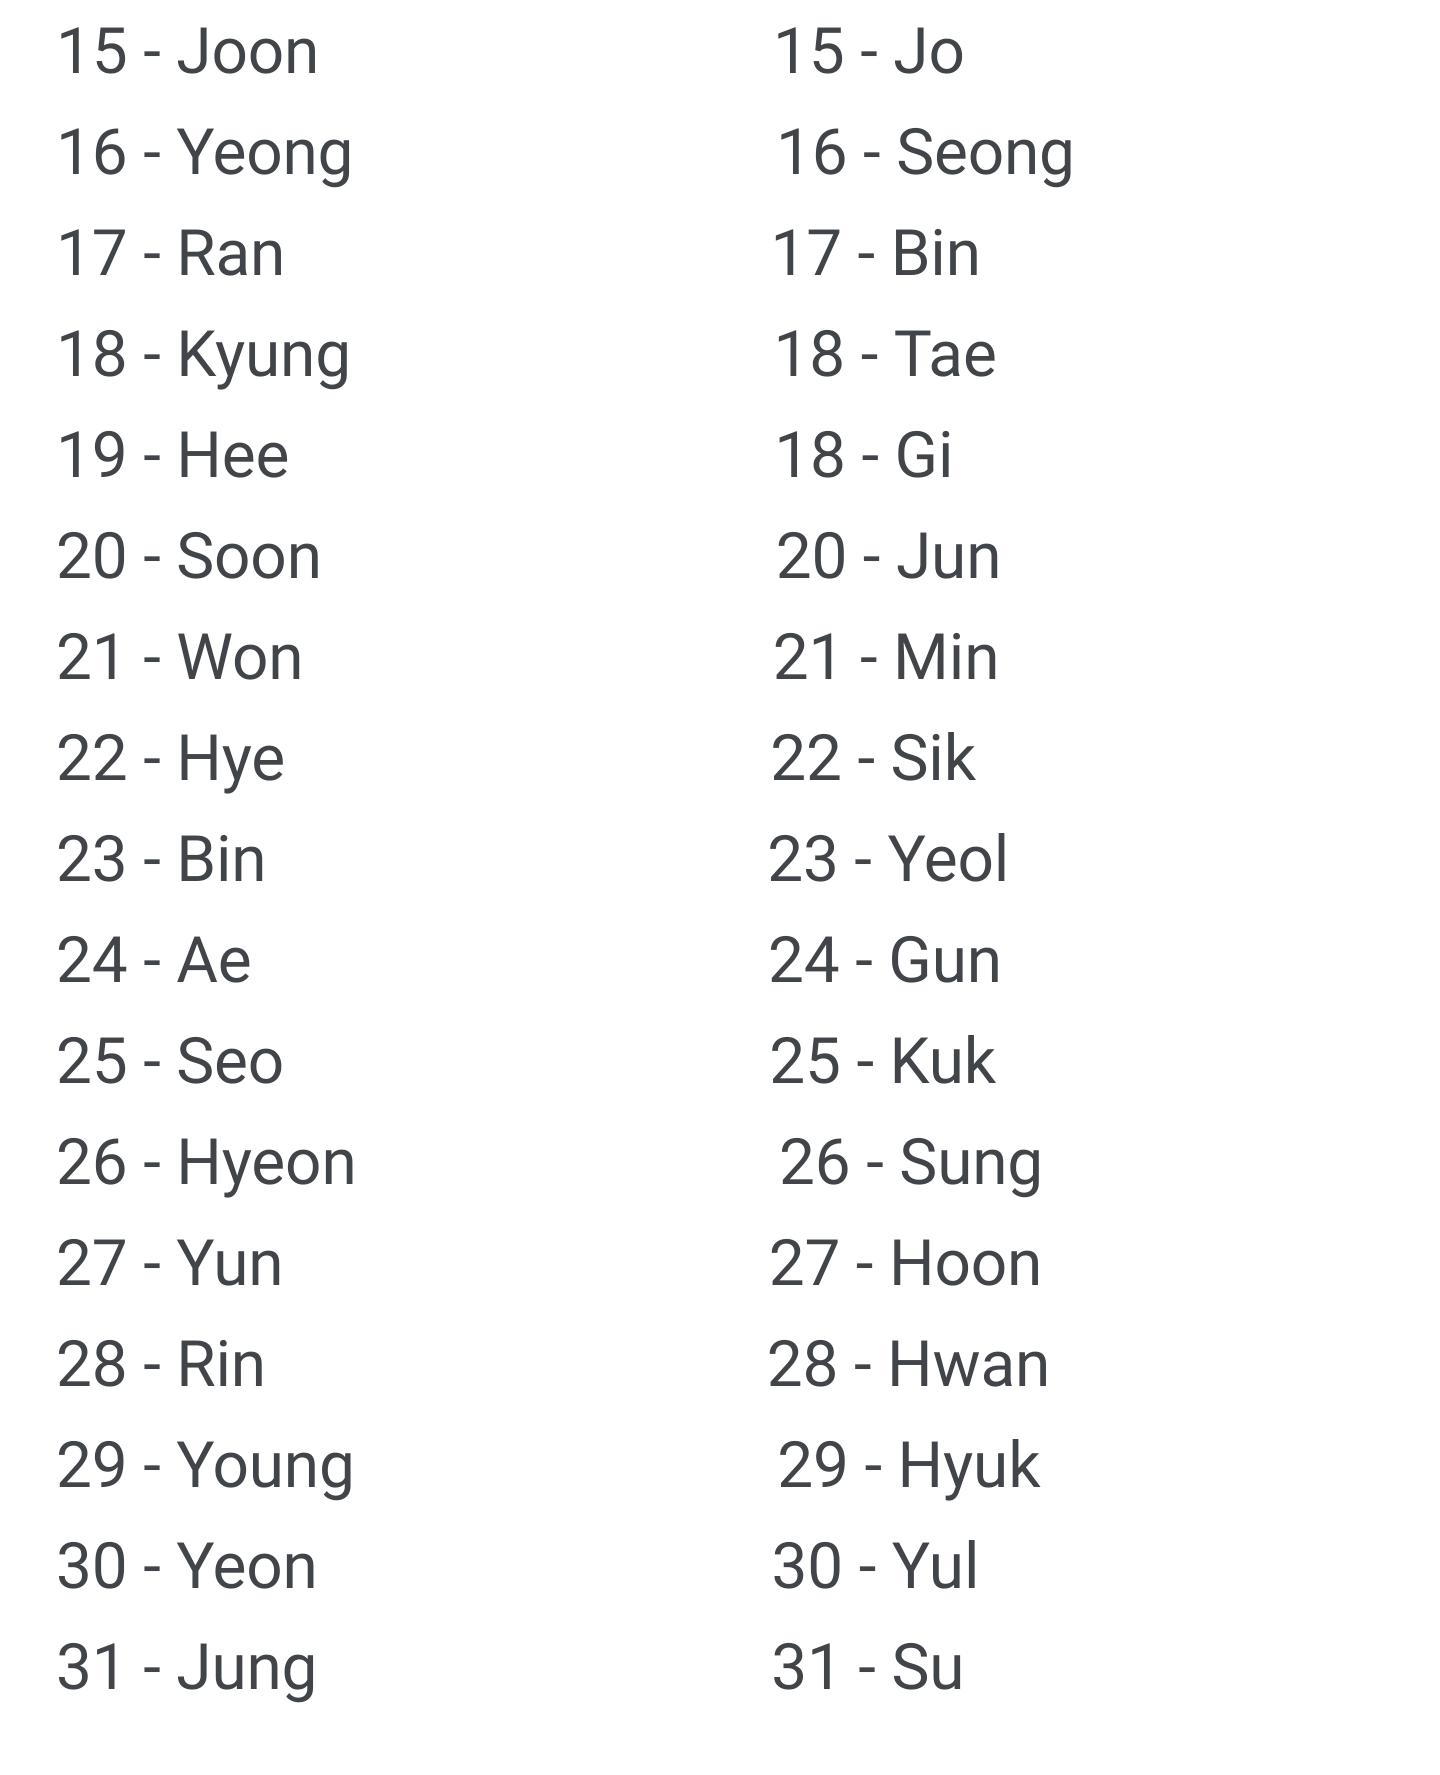 Nomes coreanos masculinos, 185 opções incríveis e significados!